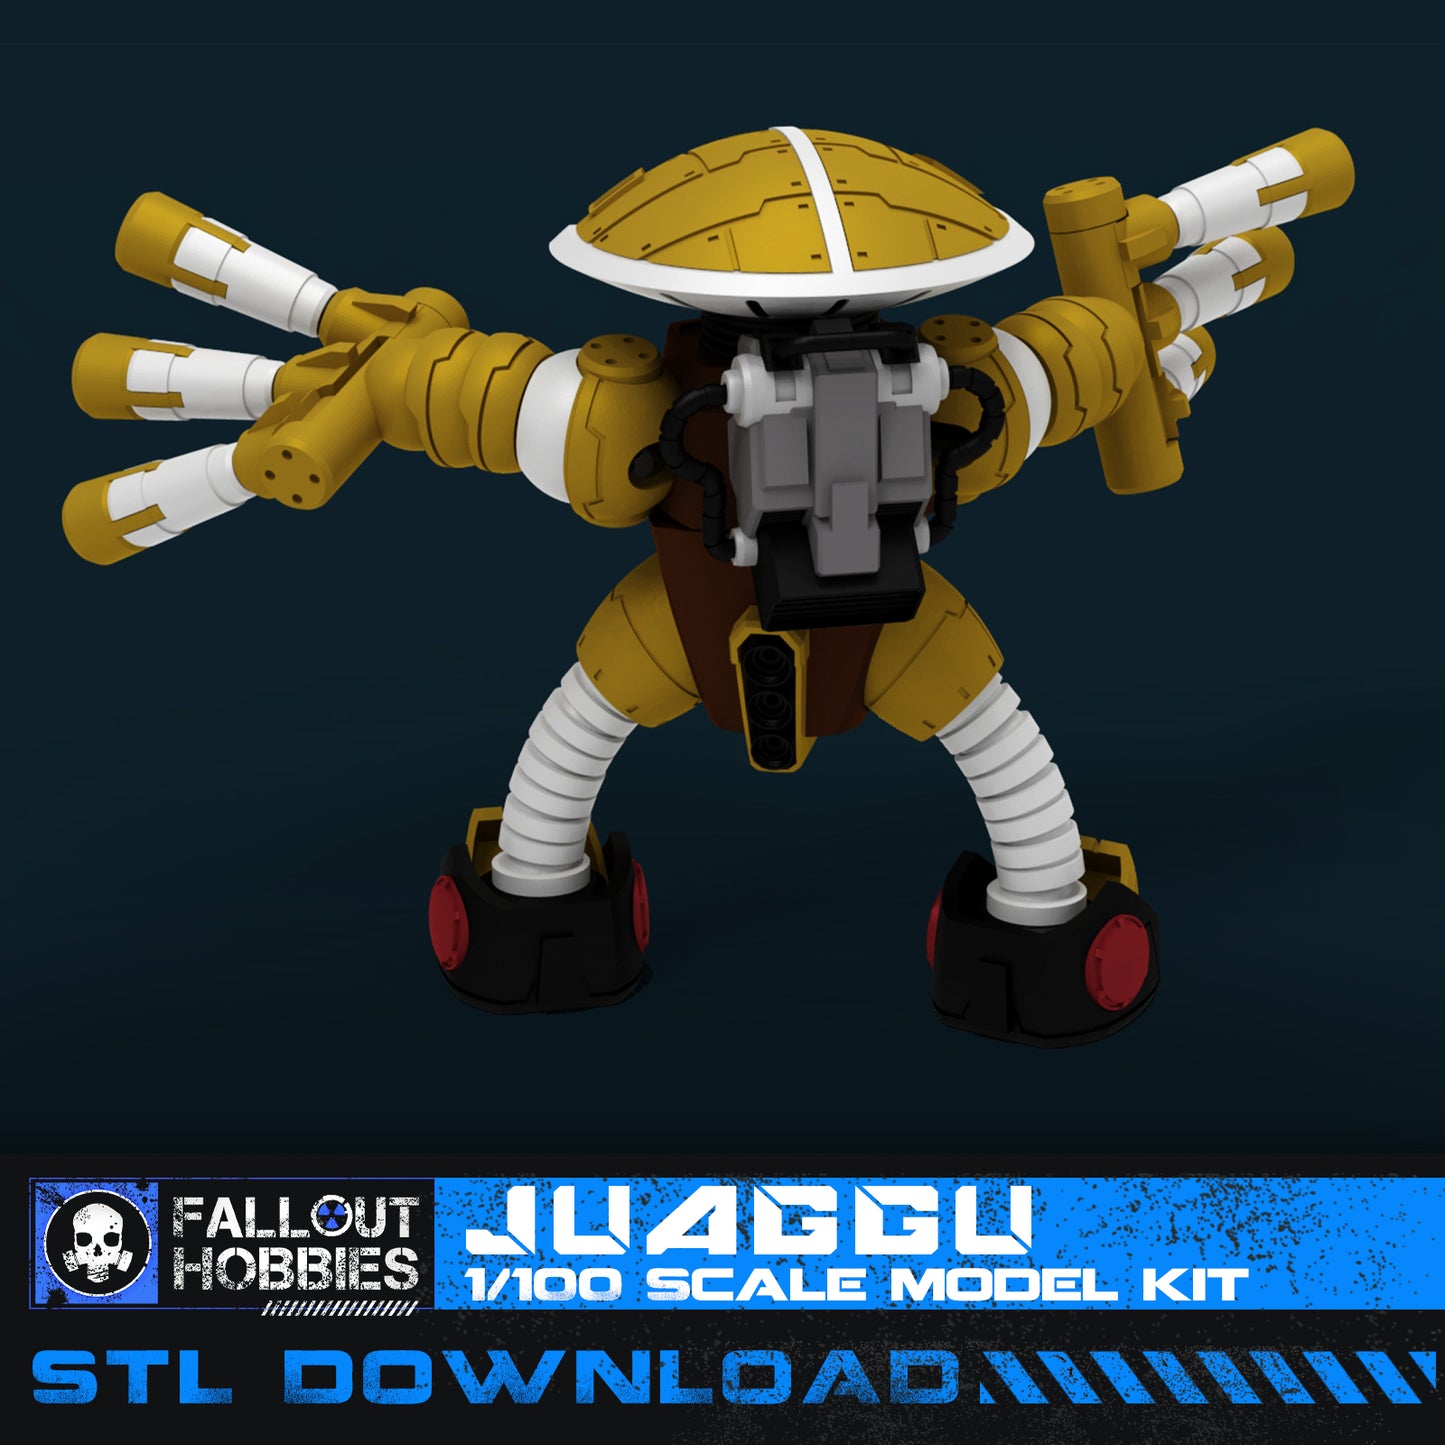 Juaggu Mecha Suit 3D STL File Download